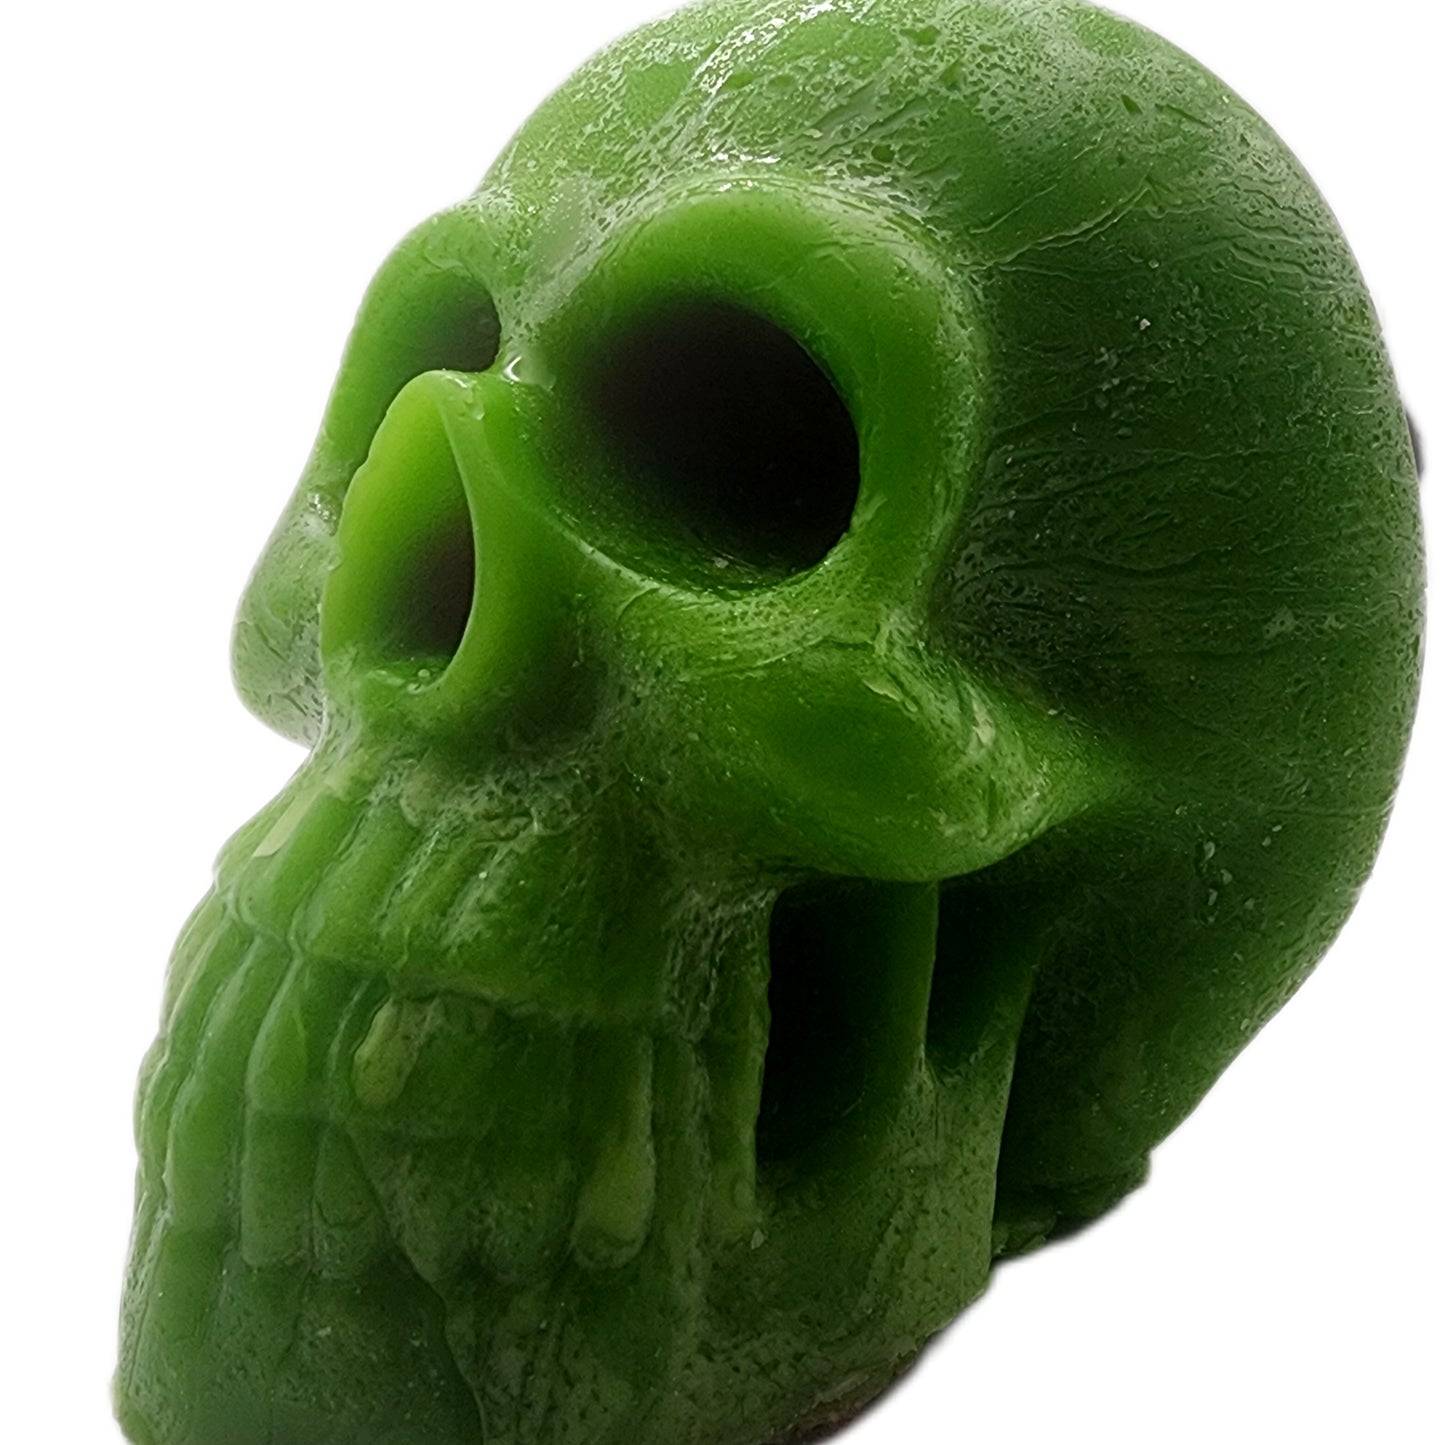 Male skull (Paraffin)